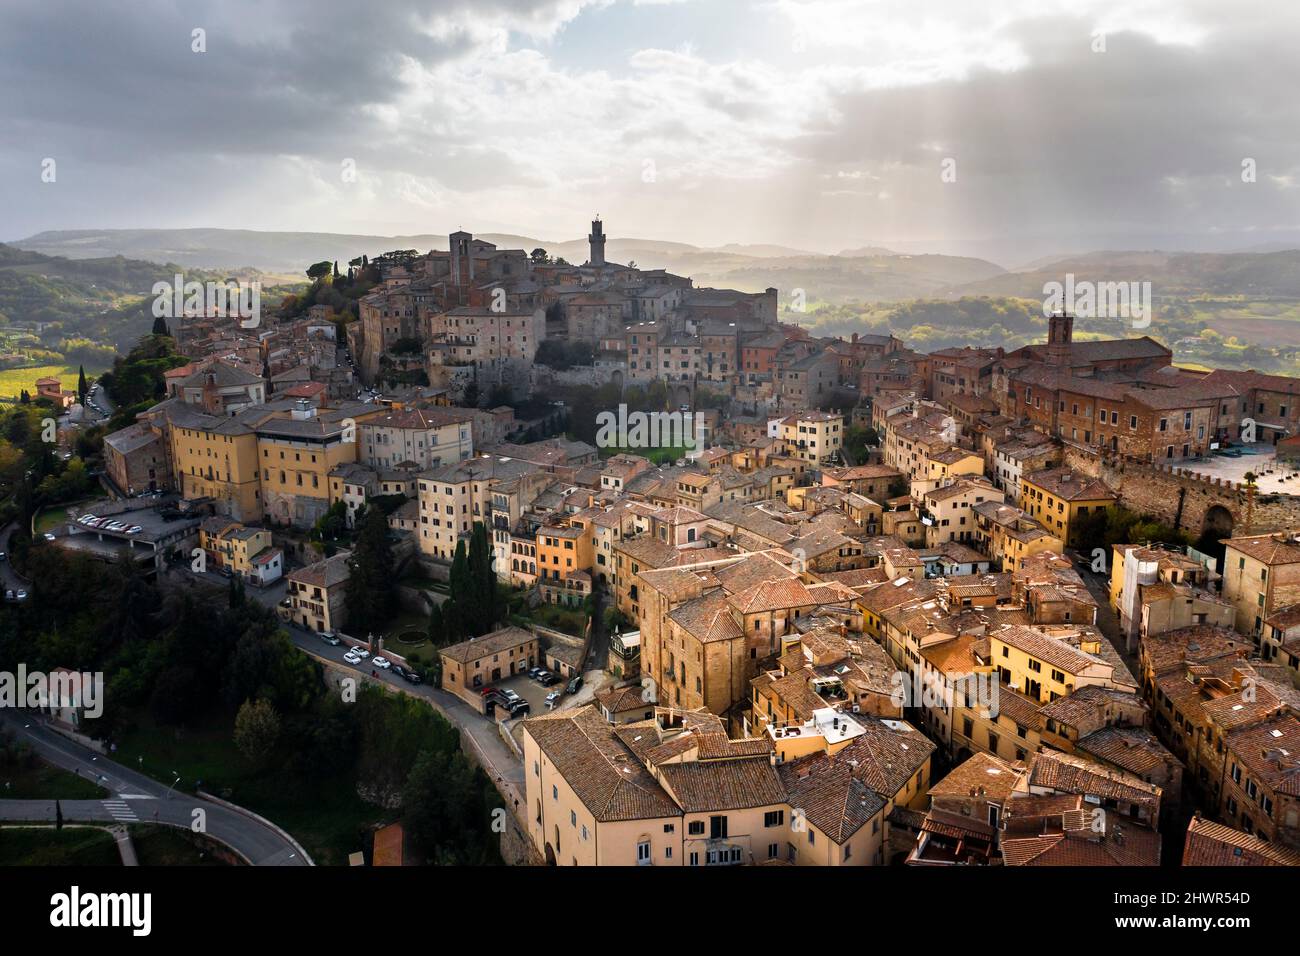 Italia, Provincia di Siena, Montepulciano, vista in elicottero sulla cittadina medievale collinare della Val d'Orcia in giornata nuvolosa Foto Stock